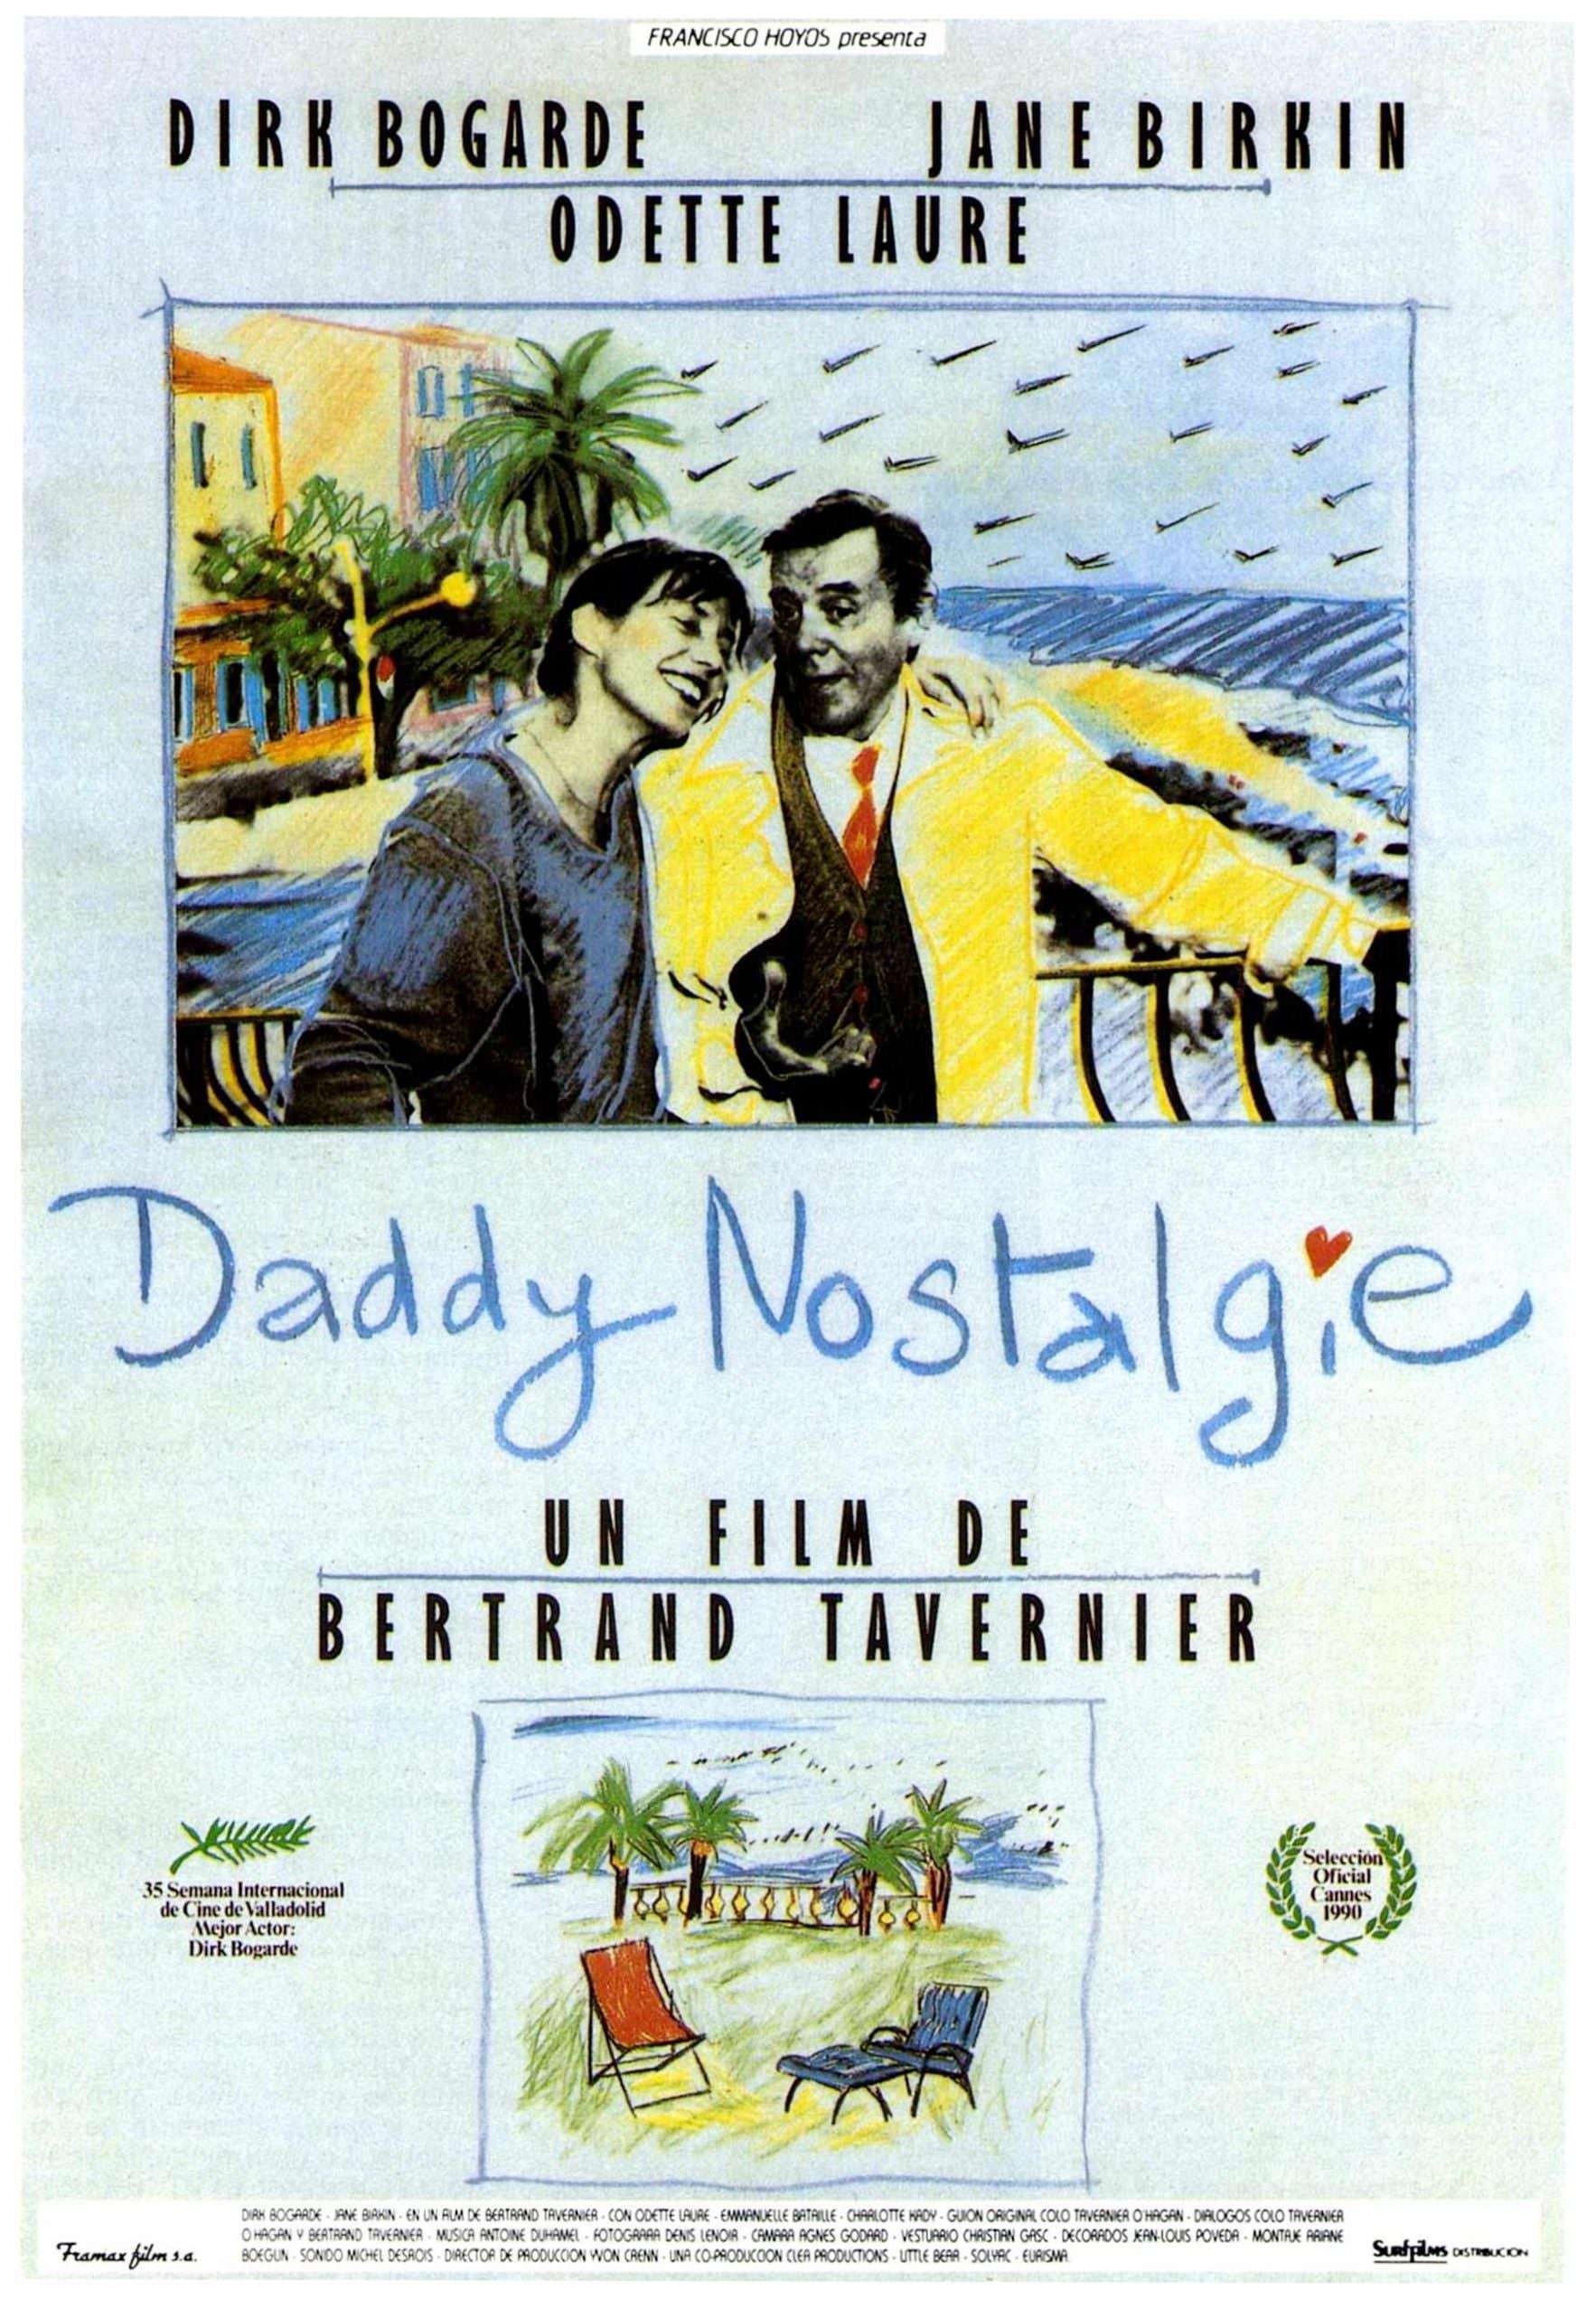 Daddy Nostalgie de Bertrand Tavernier